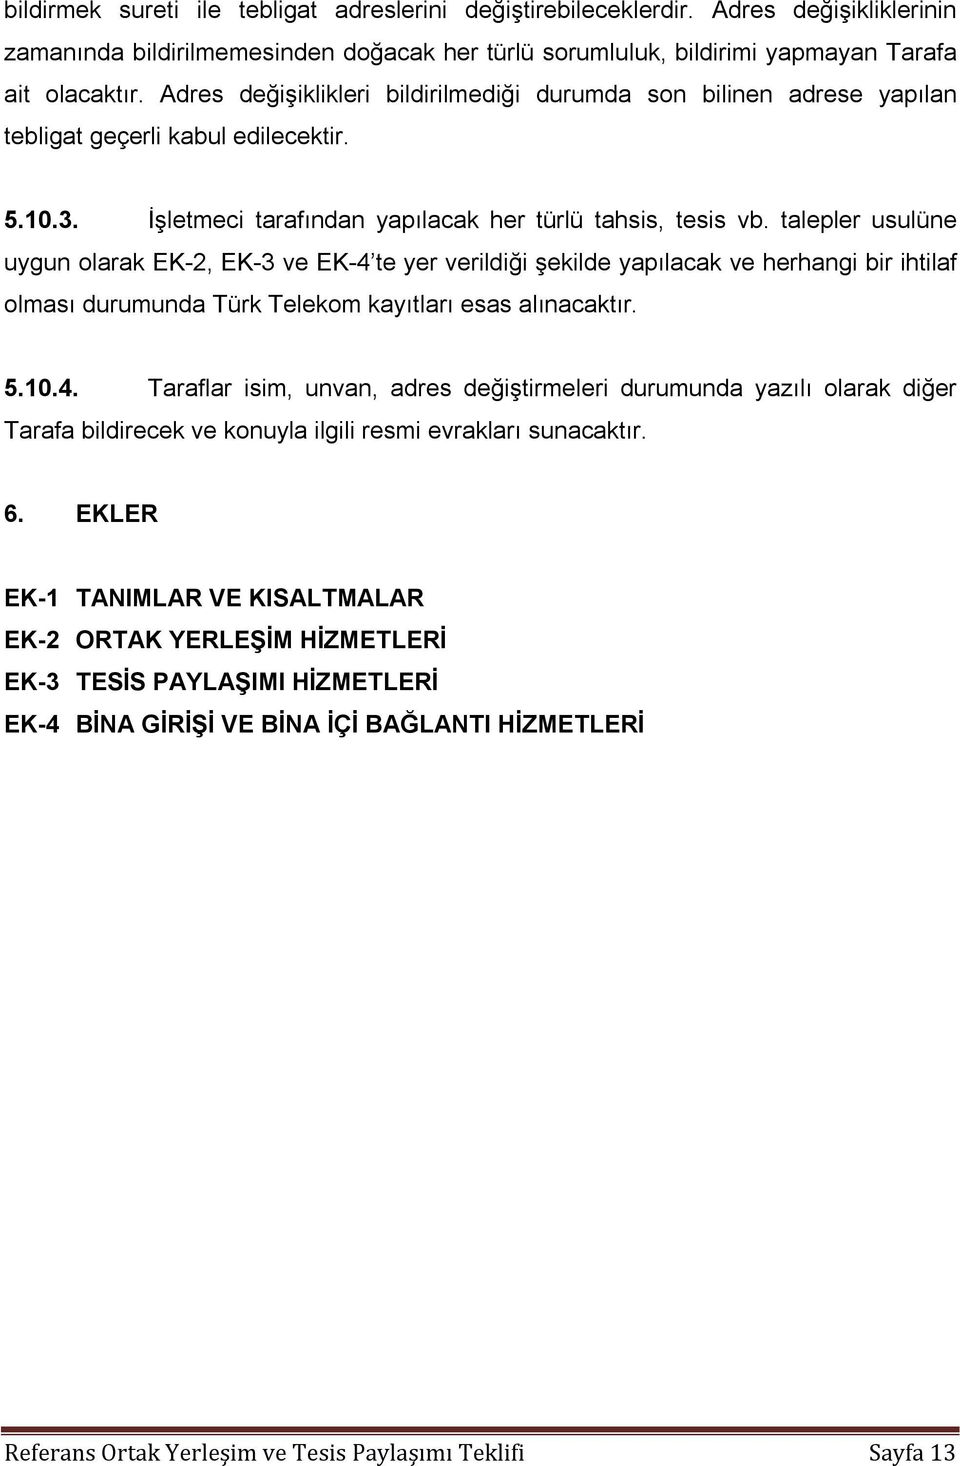 talepler usulüne uygun olarak EK-2, EK-3 ve EK-4 te yer verildiği şekilde yapılacak ve herhangi bir ihtilaf olması durumunda Türk Telekom kayıtları esas alınacaktır. 5.10.4. Taraflar isim, unvan, adres değiştirmeleri durumunda yazılı olarak diğer Tarafa bildirecek ve konuyla ilgili resmi evrakları sunacaktır.